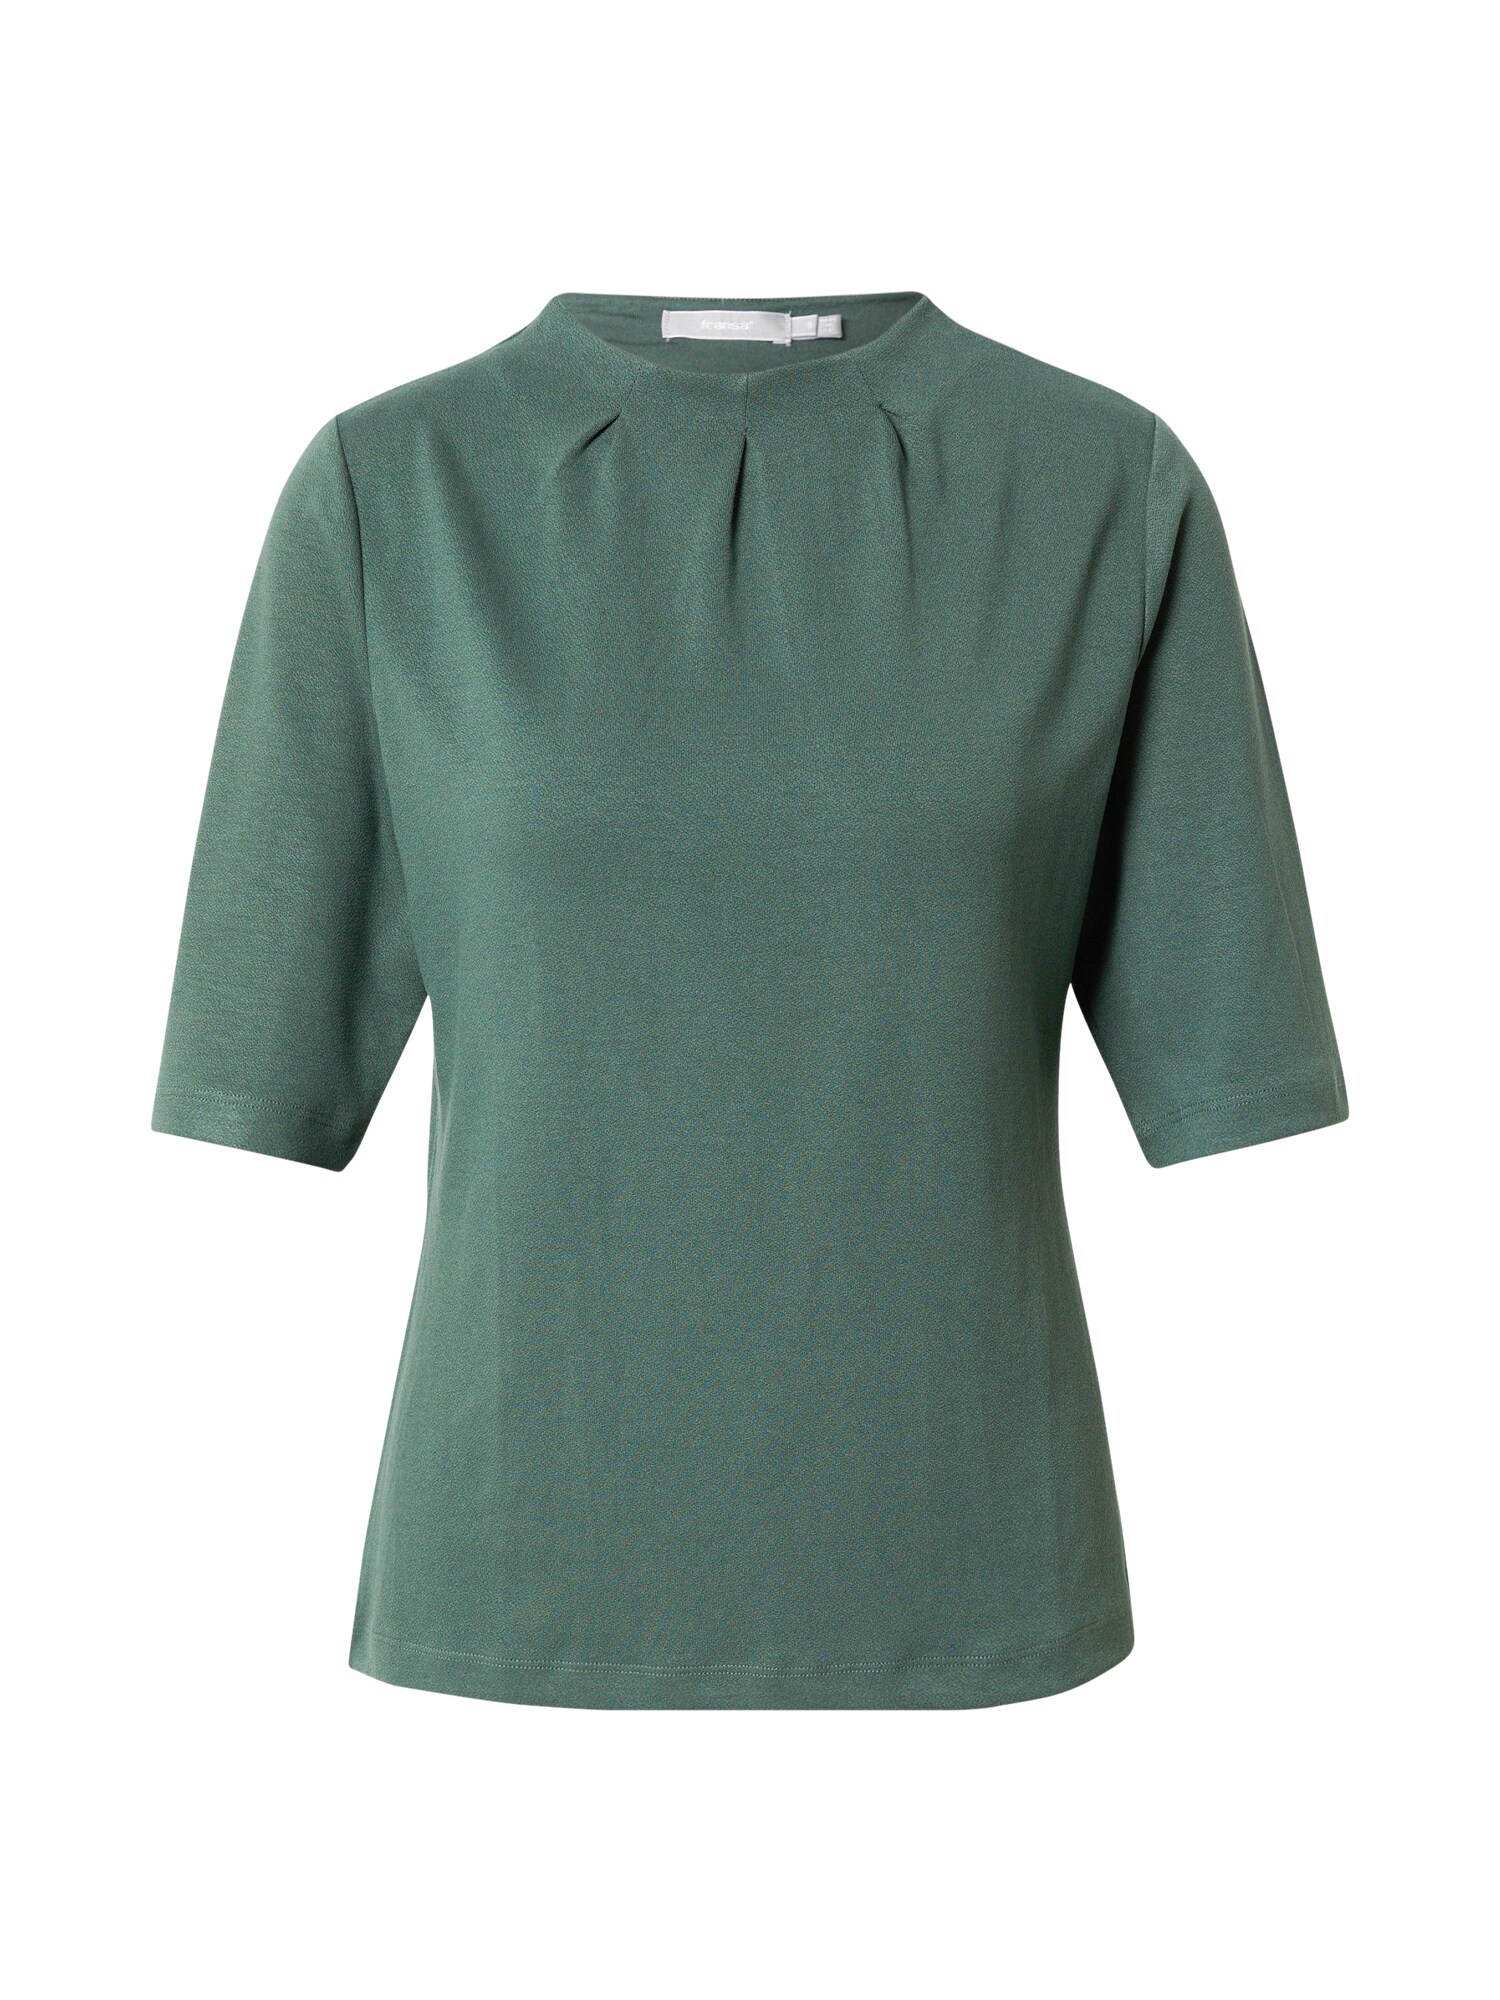 Fransa Marškinėliai 'KATE' smaragdinė spalva